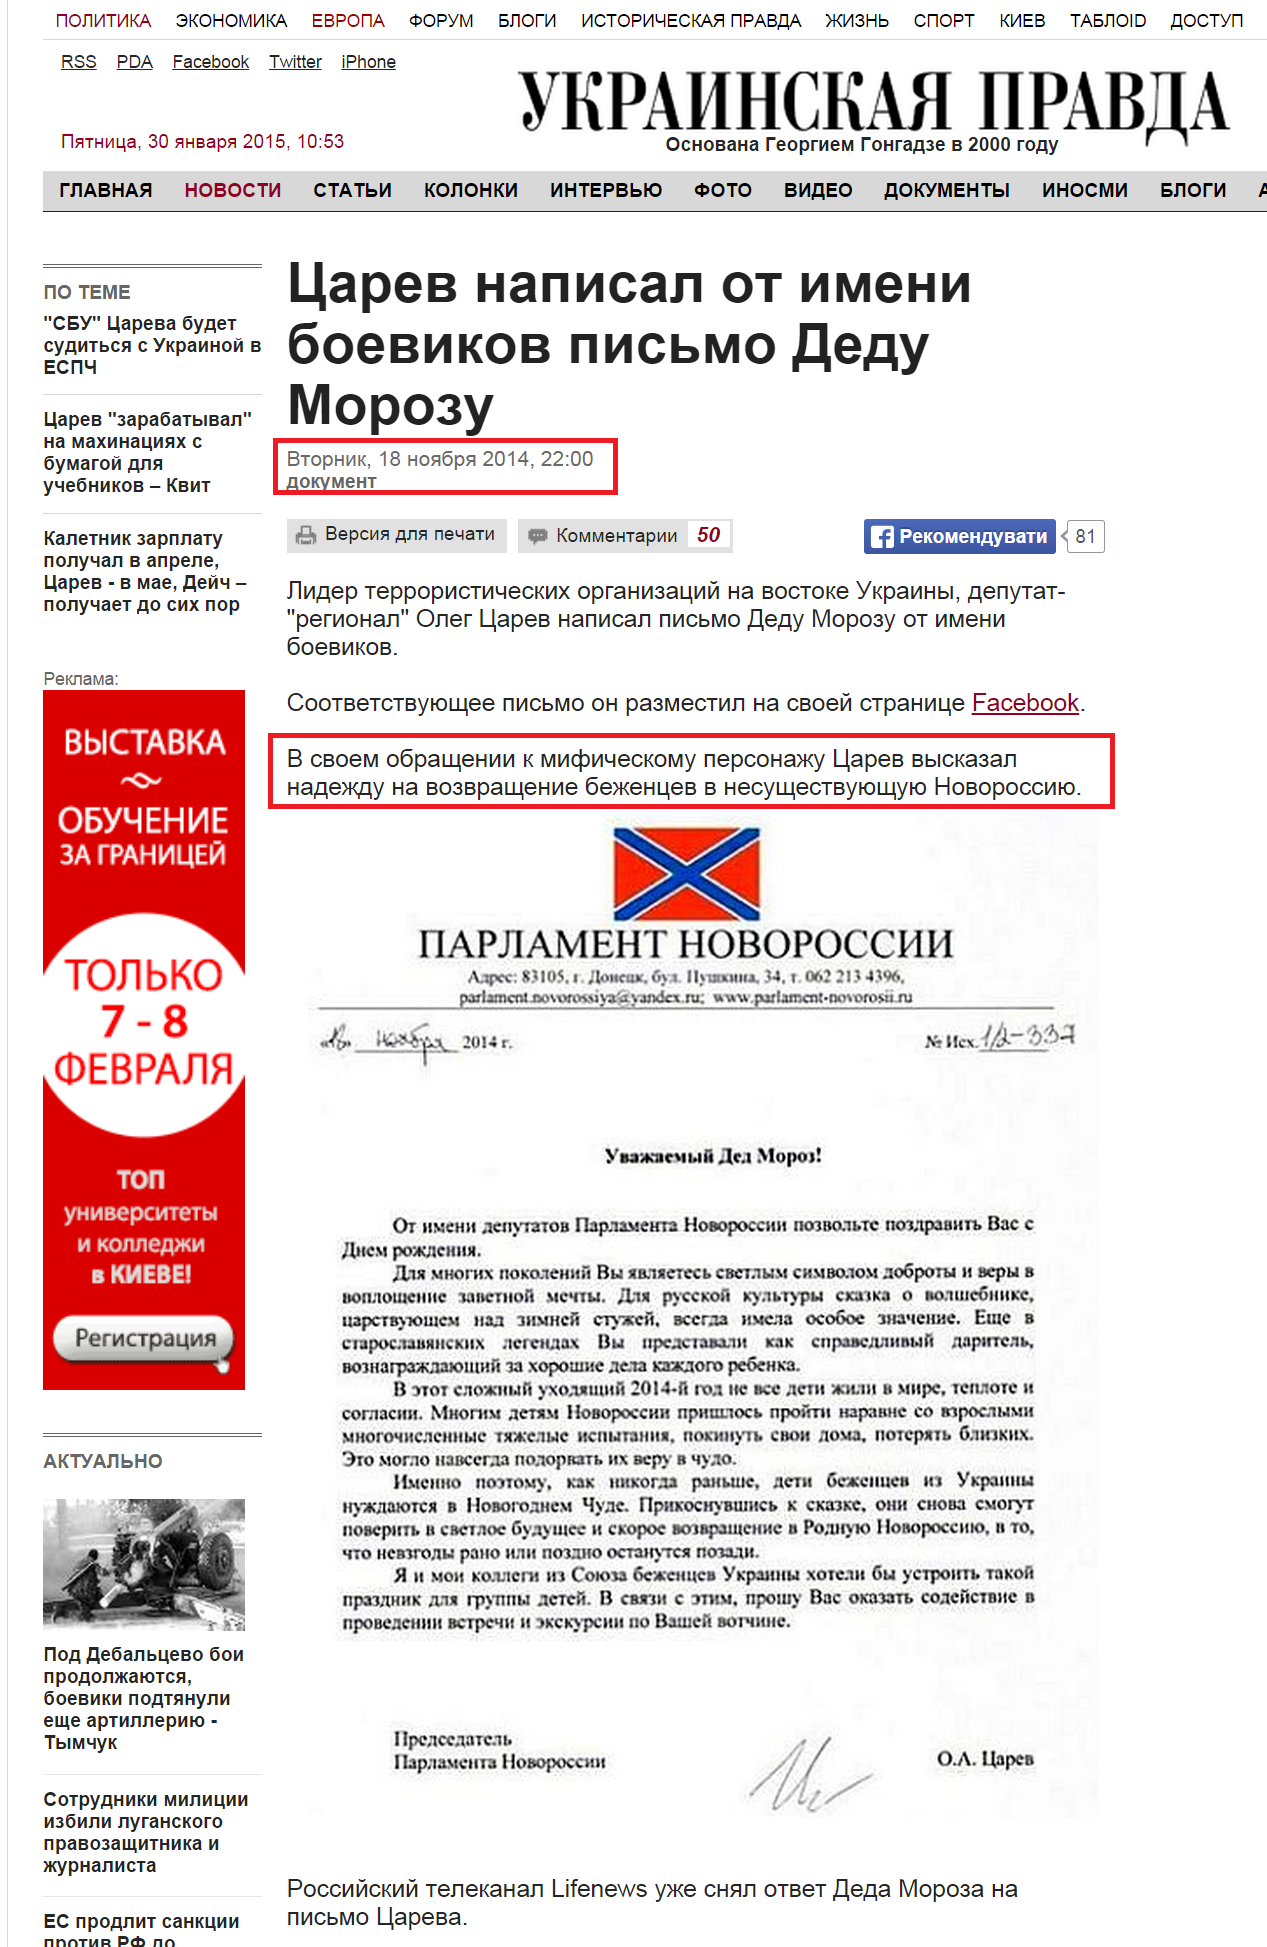 http://www.pravda.com.ua/rus/news/2014/11/18/7044685/